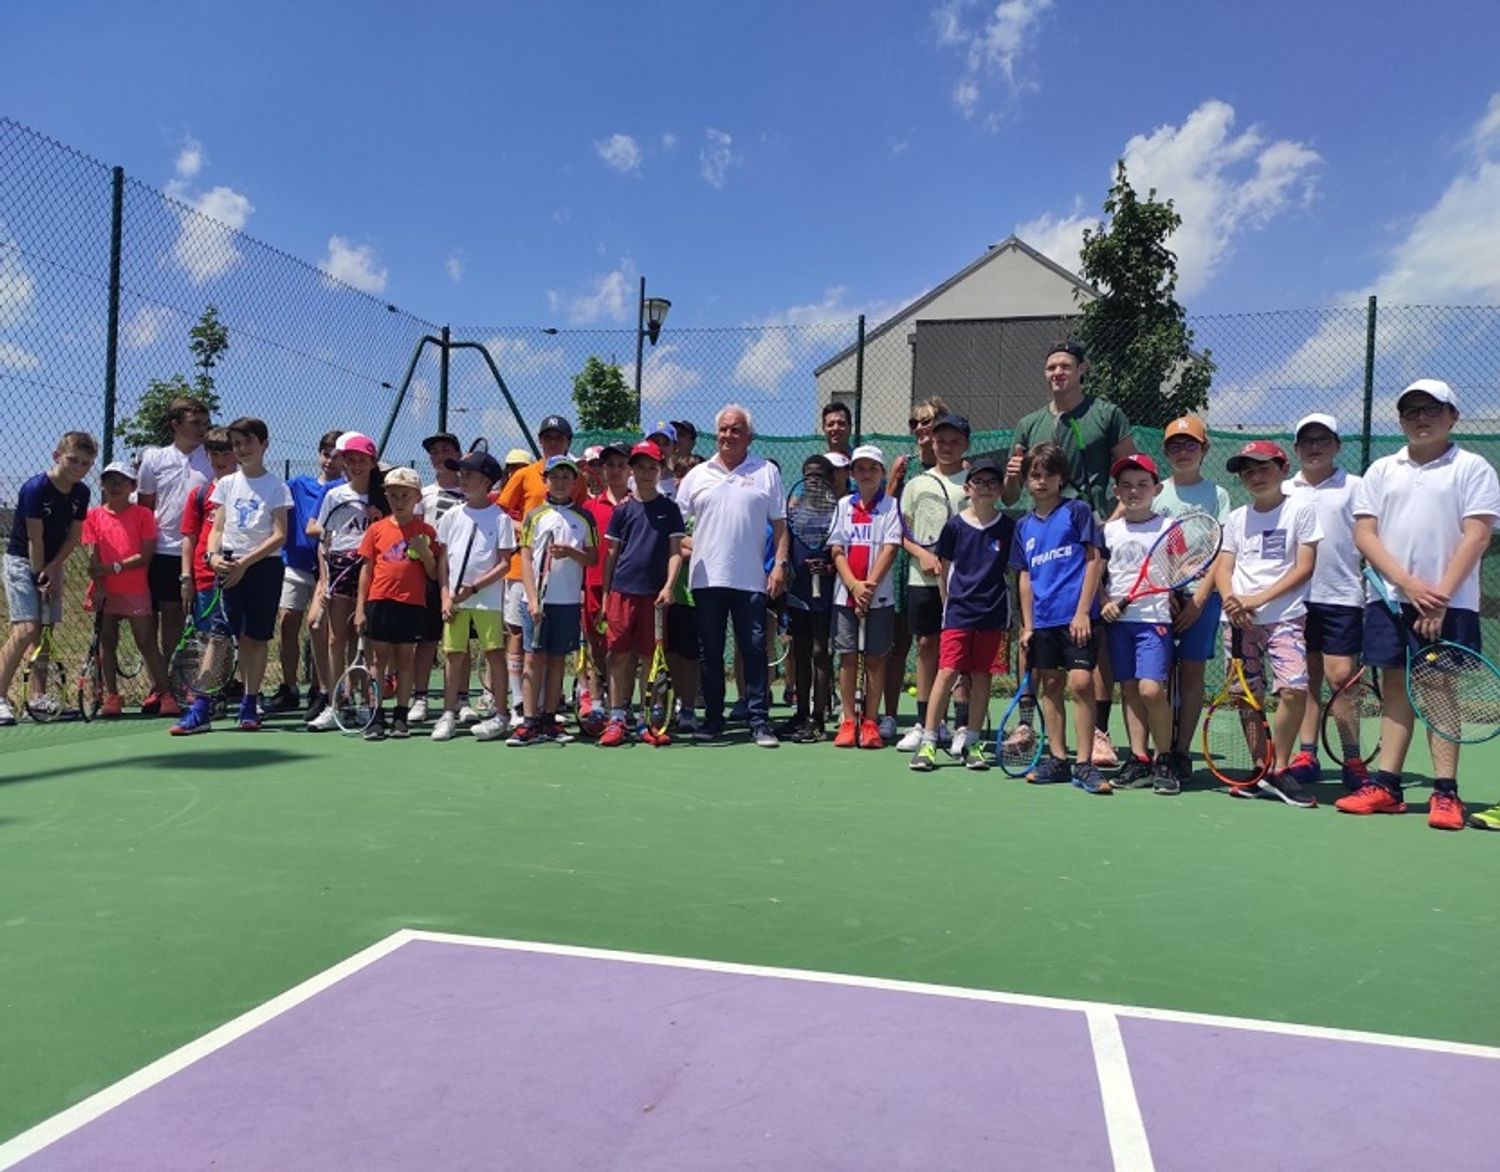 Les enfants, invités du jour sur les internationaux de tennis de Blois